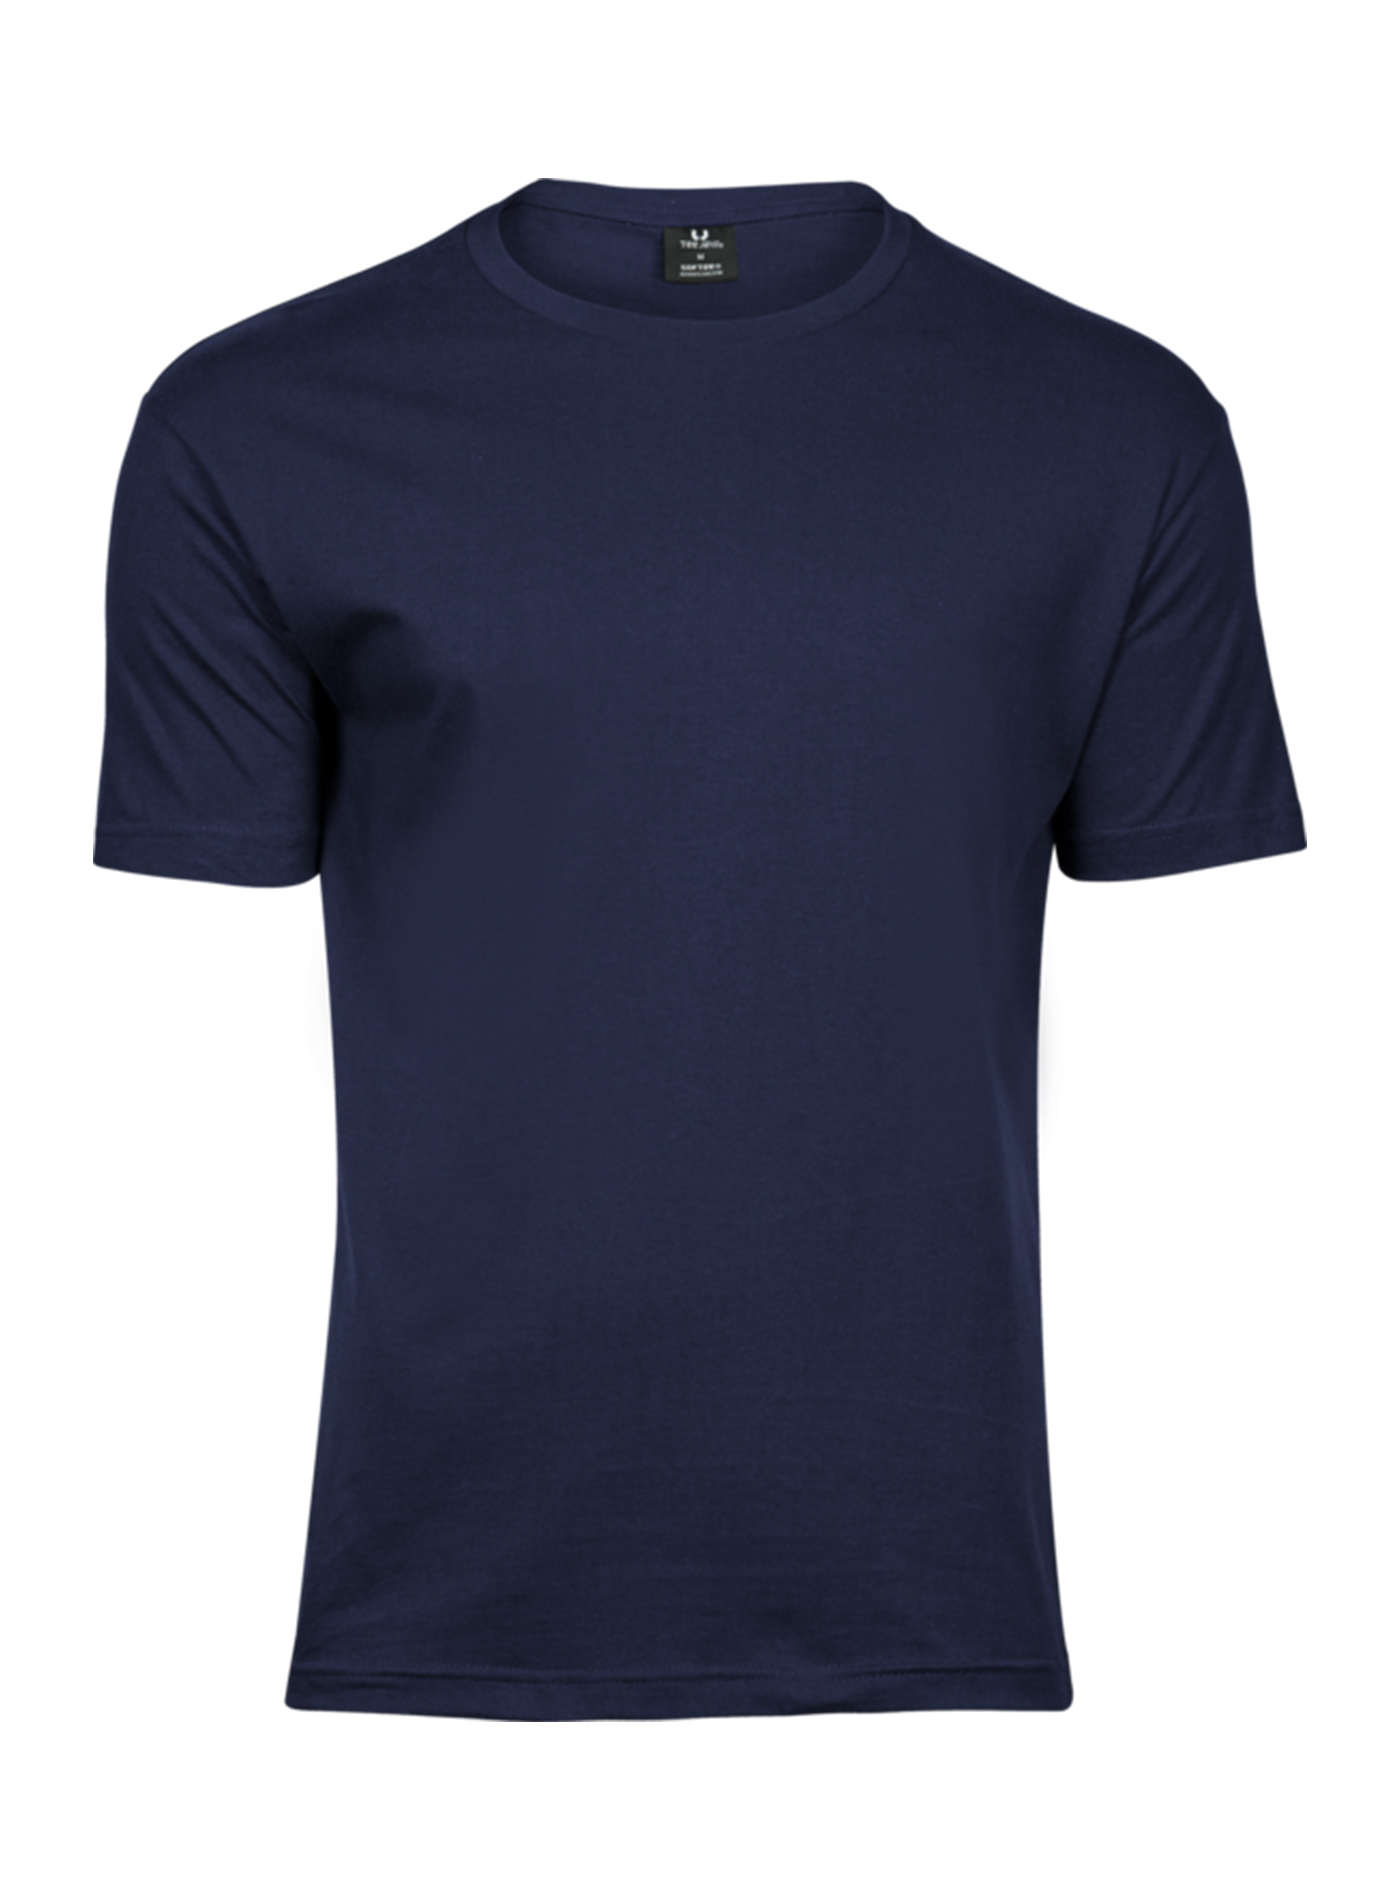 Pánské tričko Fashion Tee Jays - Námořní modrá XXL